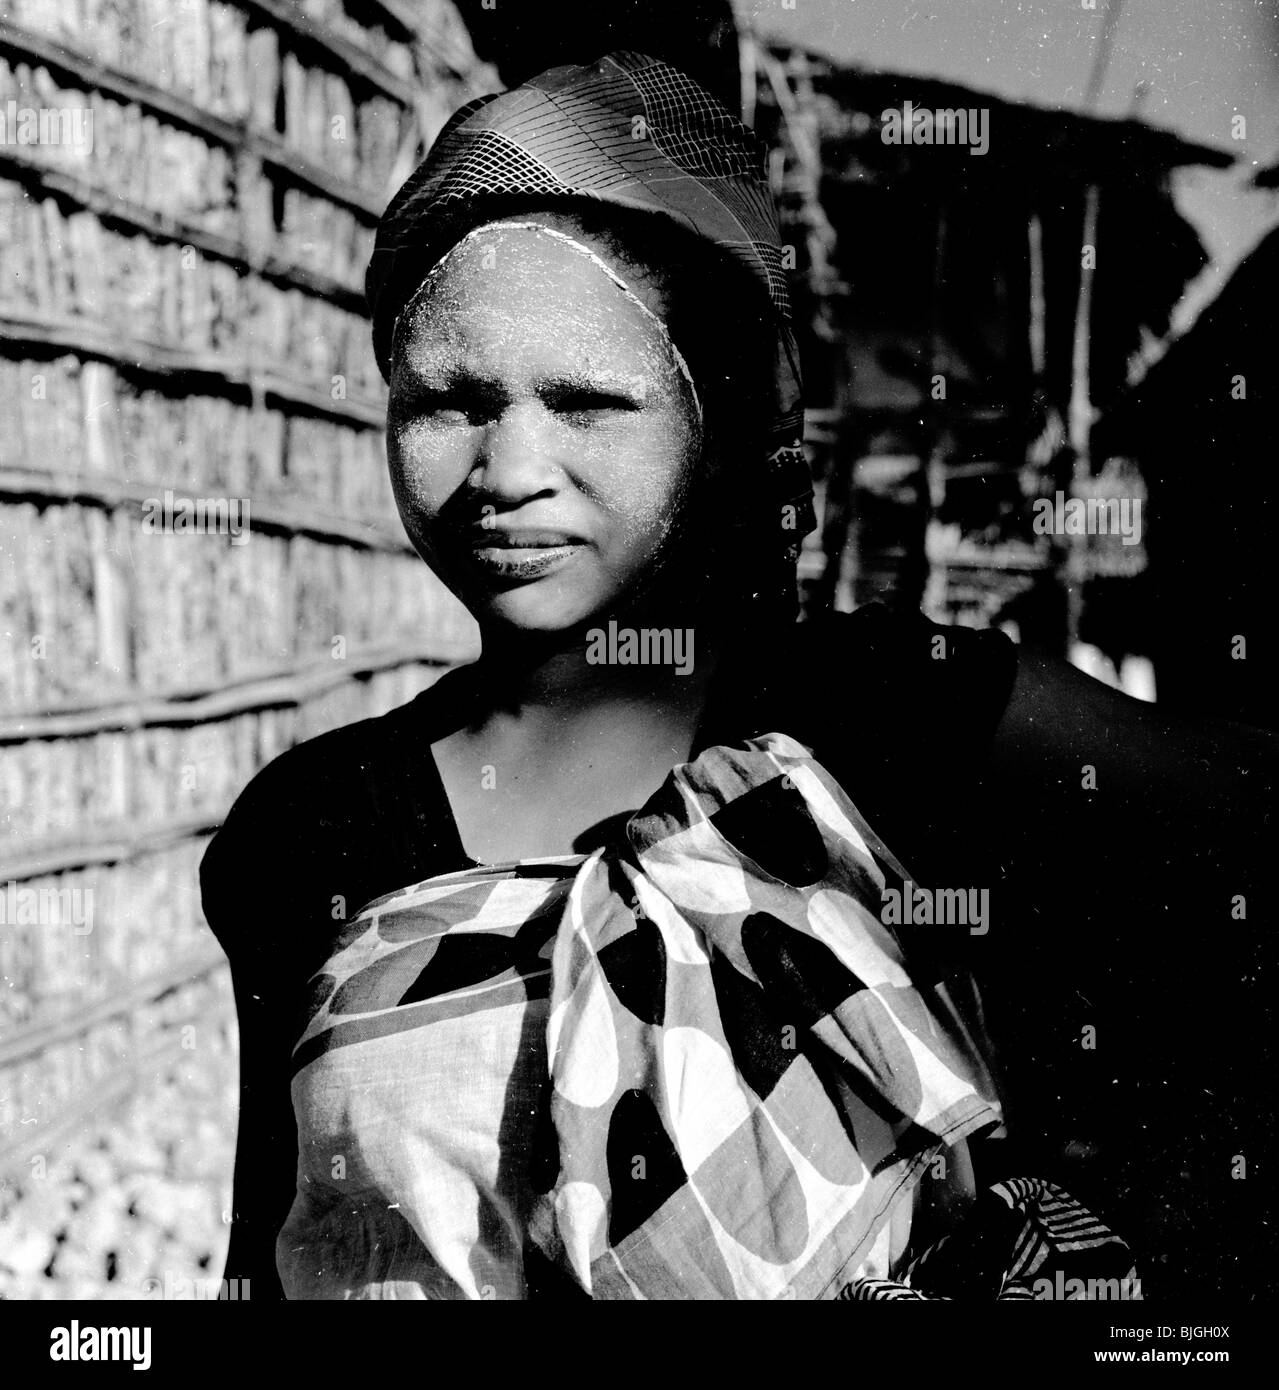 Afrika, 1950er Jahre. Foto von J Allan Cash einer Frau aus Mosambik, Afrika, zeigt das Make-up im Gesicht. Stockfoto